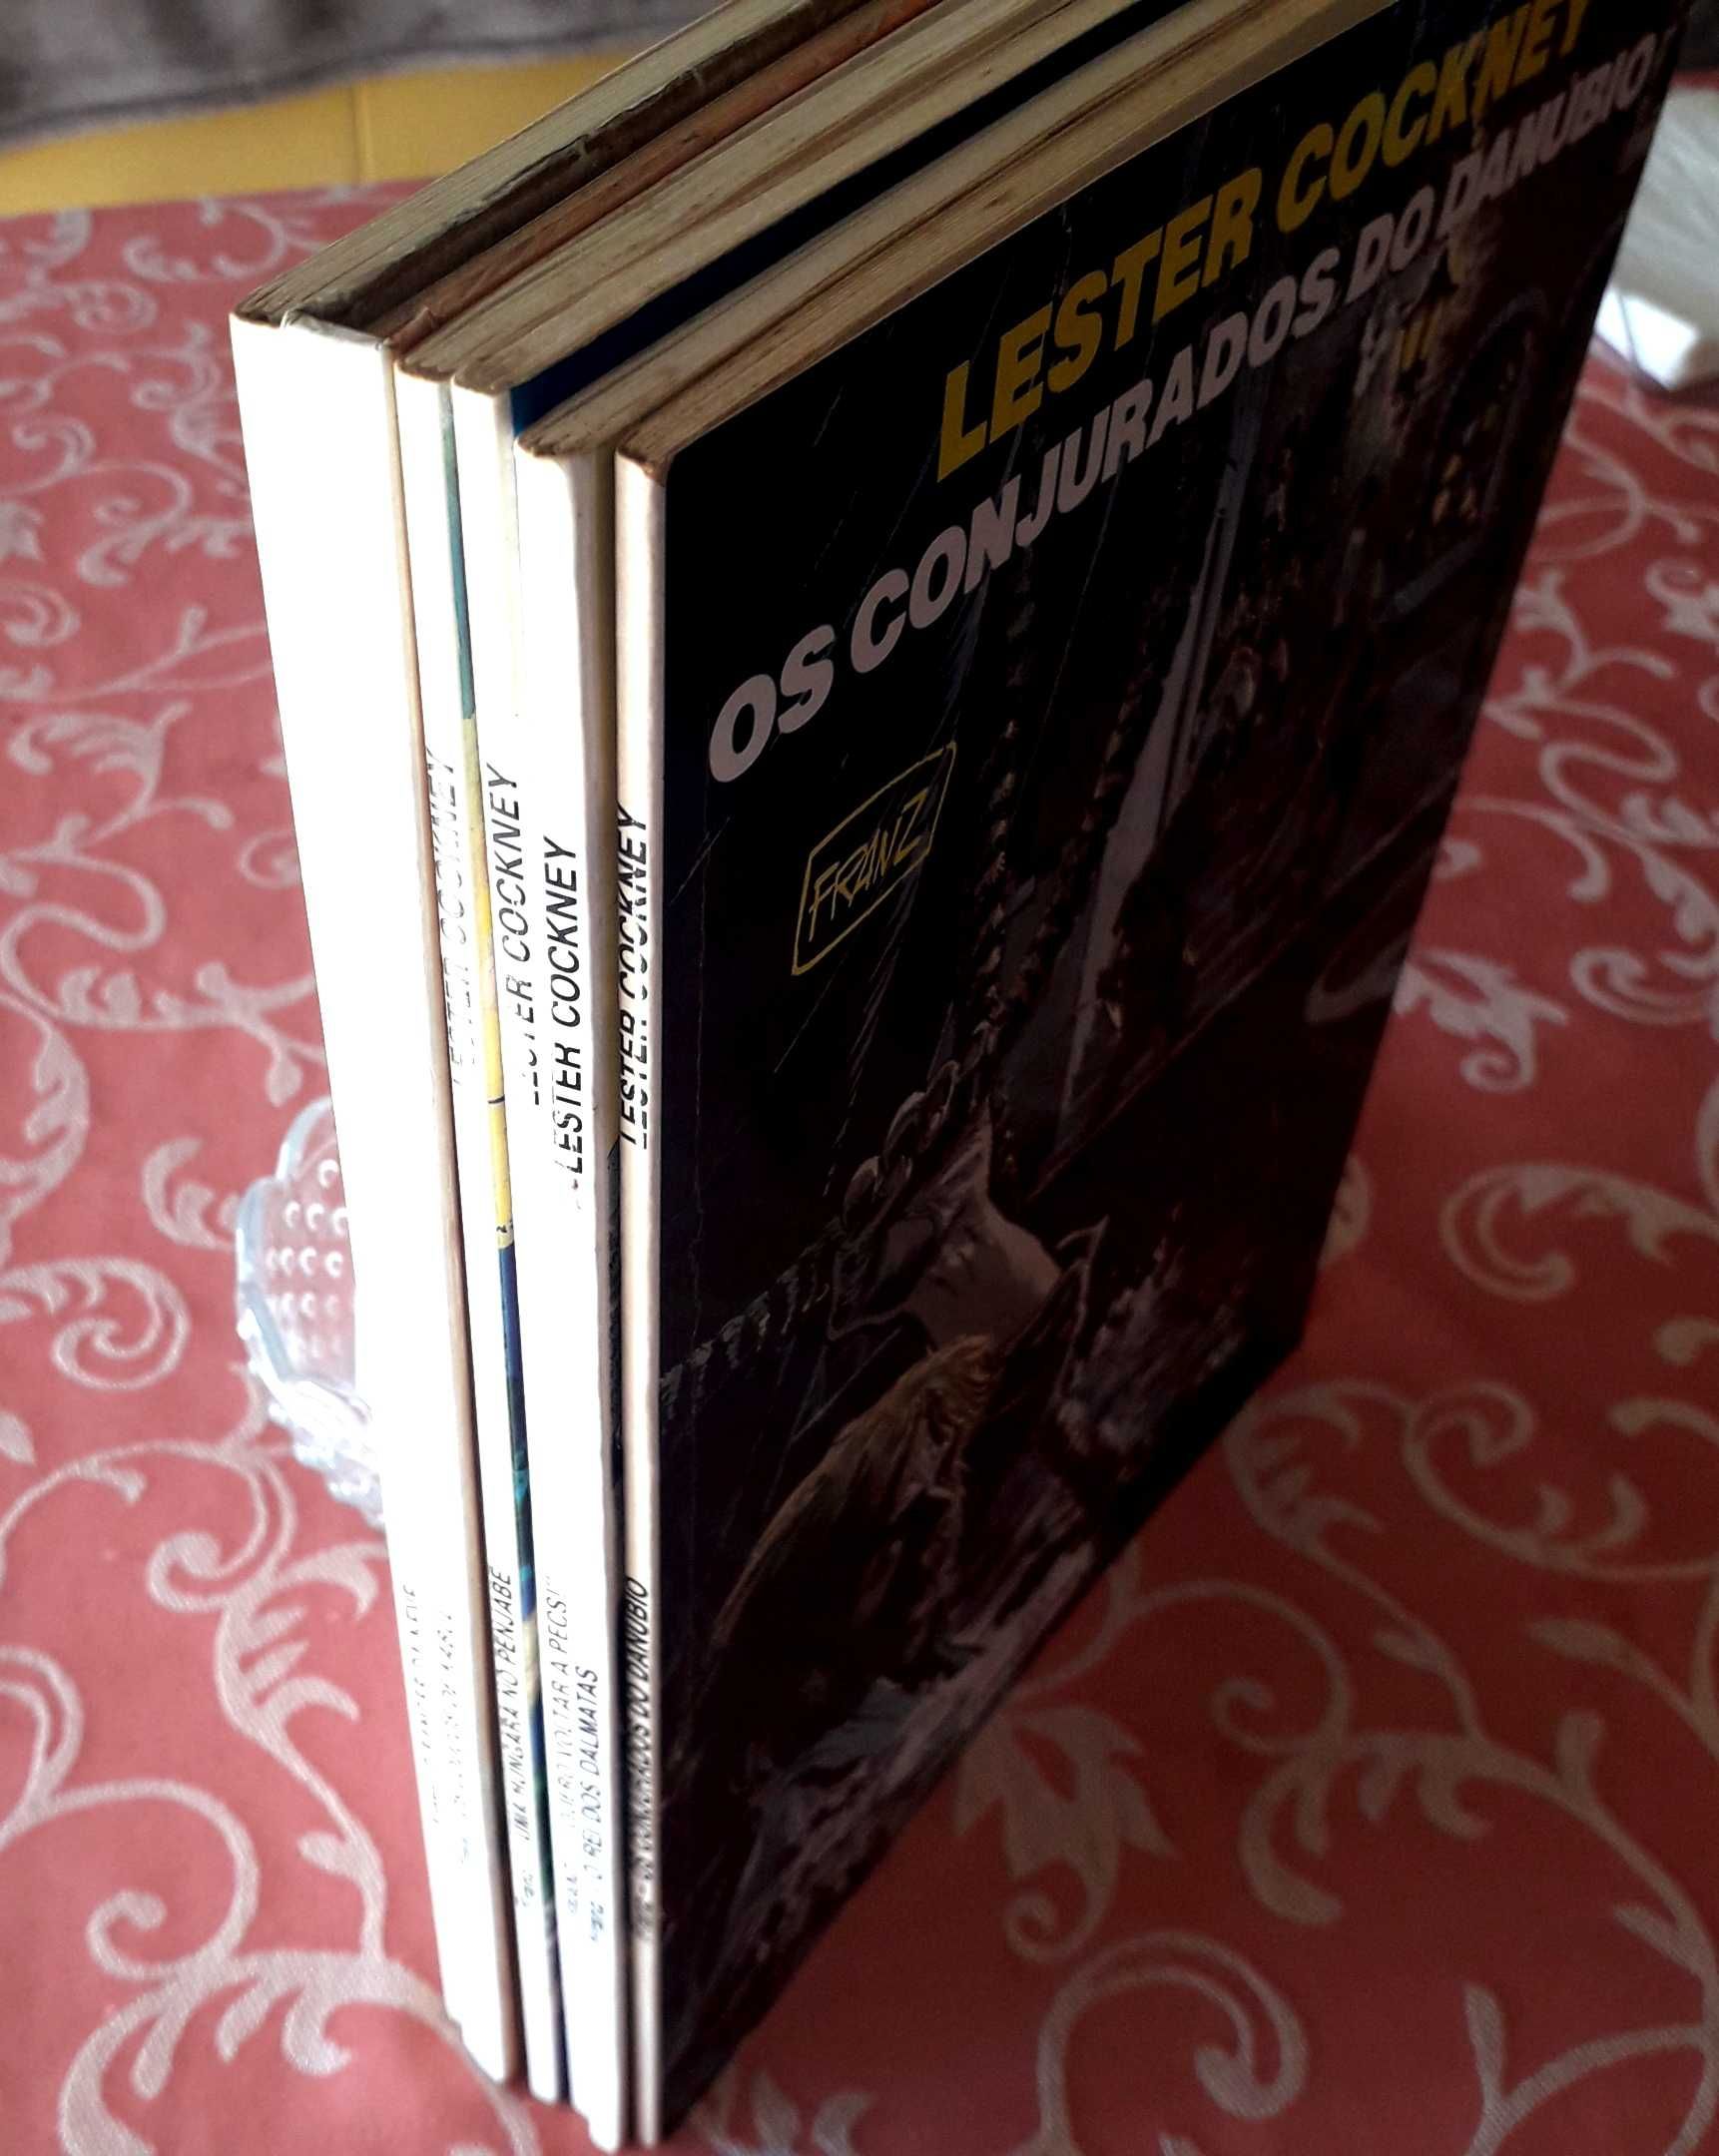 Livros de BD - Franz Drappier - Lester Cockney